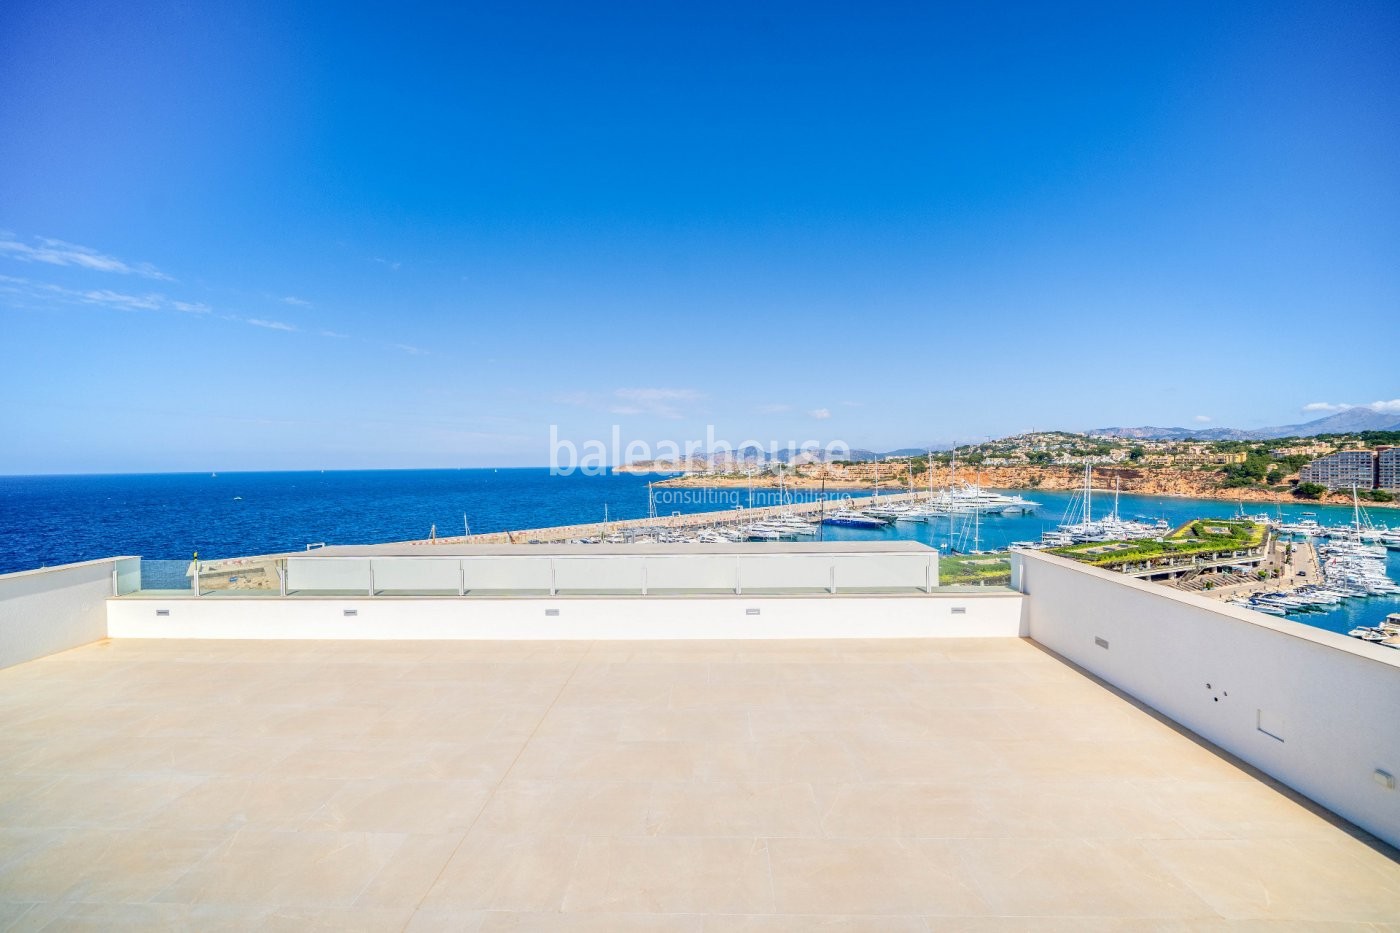 Sensacional villa de obra nueva que se extiende como un gran mirador al mar en Port Adriano